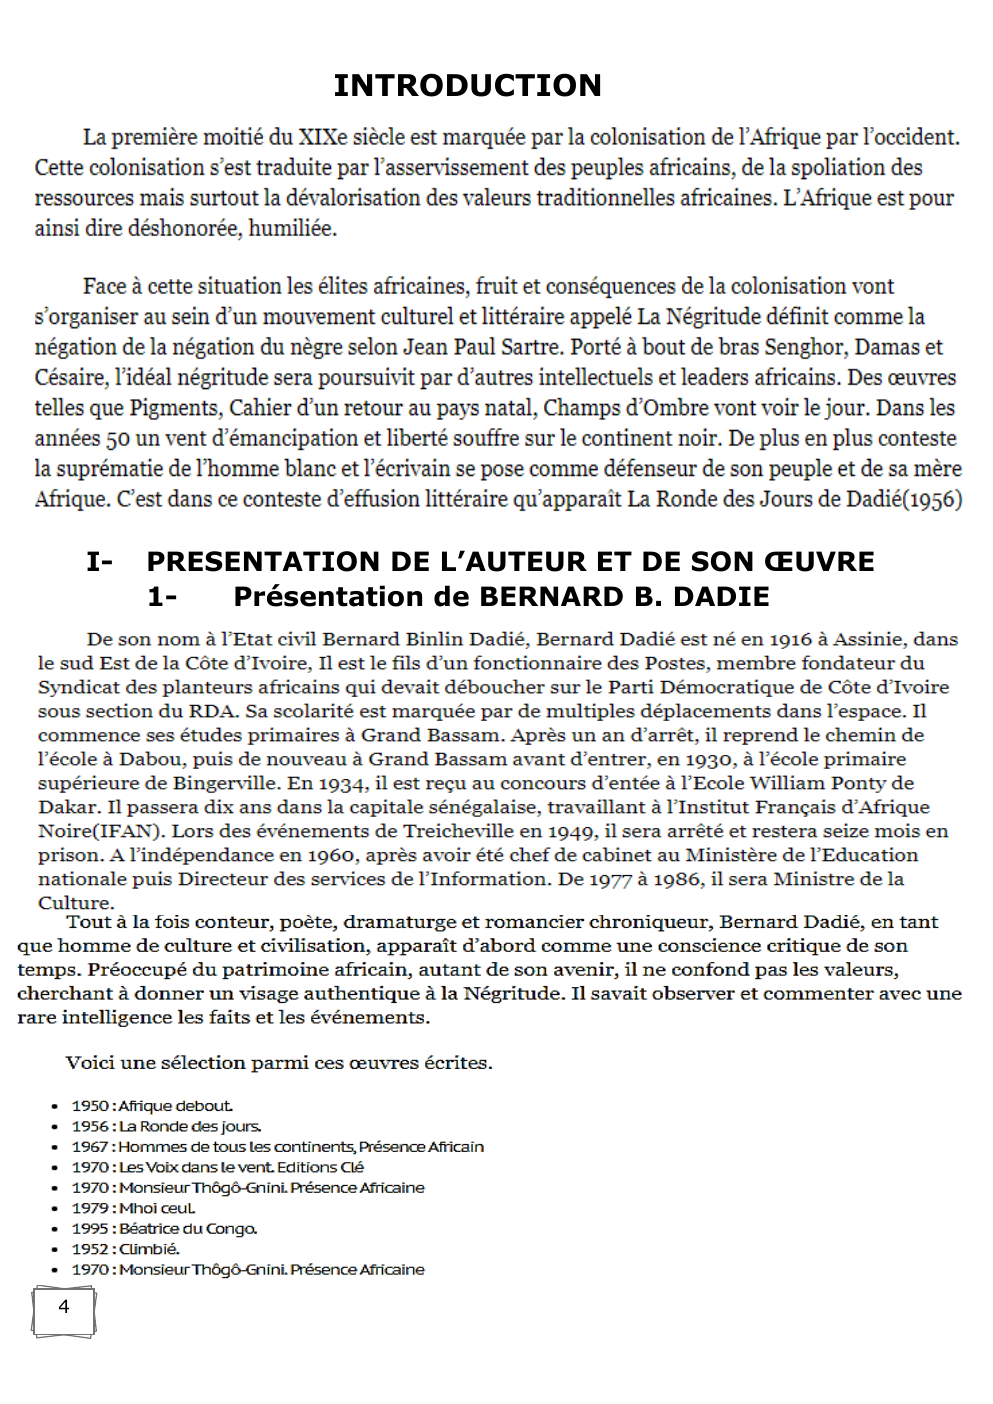 Prévisualisation du document PRESENTATION DE L’AUTEUR ET DE SON ŒUVRE: BERNARD B. DADIE